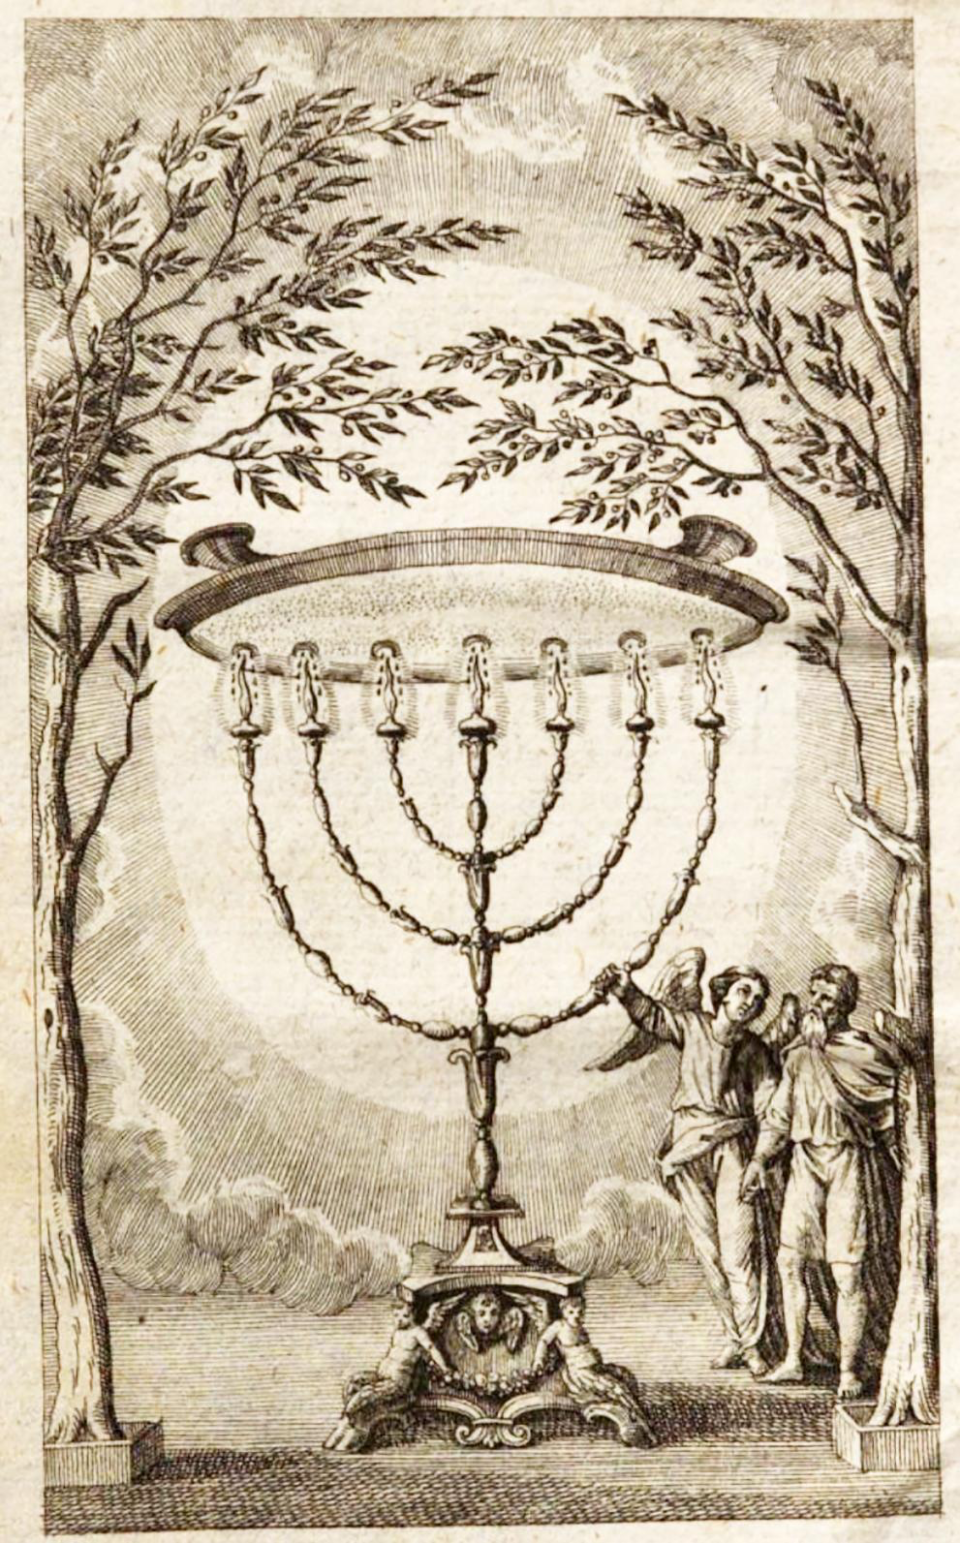 The secret candelabrum ("Perspective on magic", Karl von Eckhartshausen)